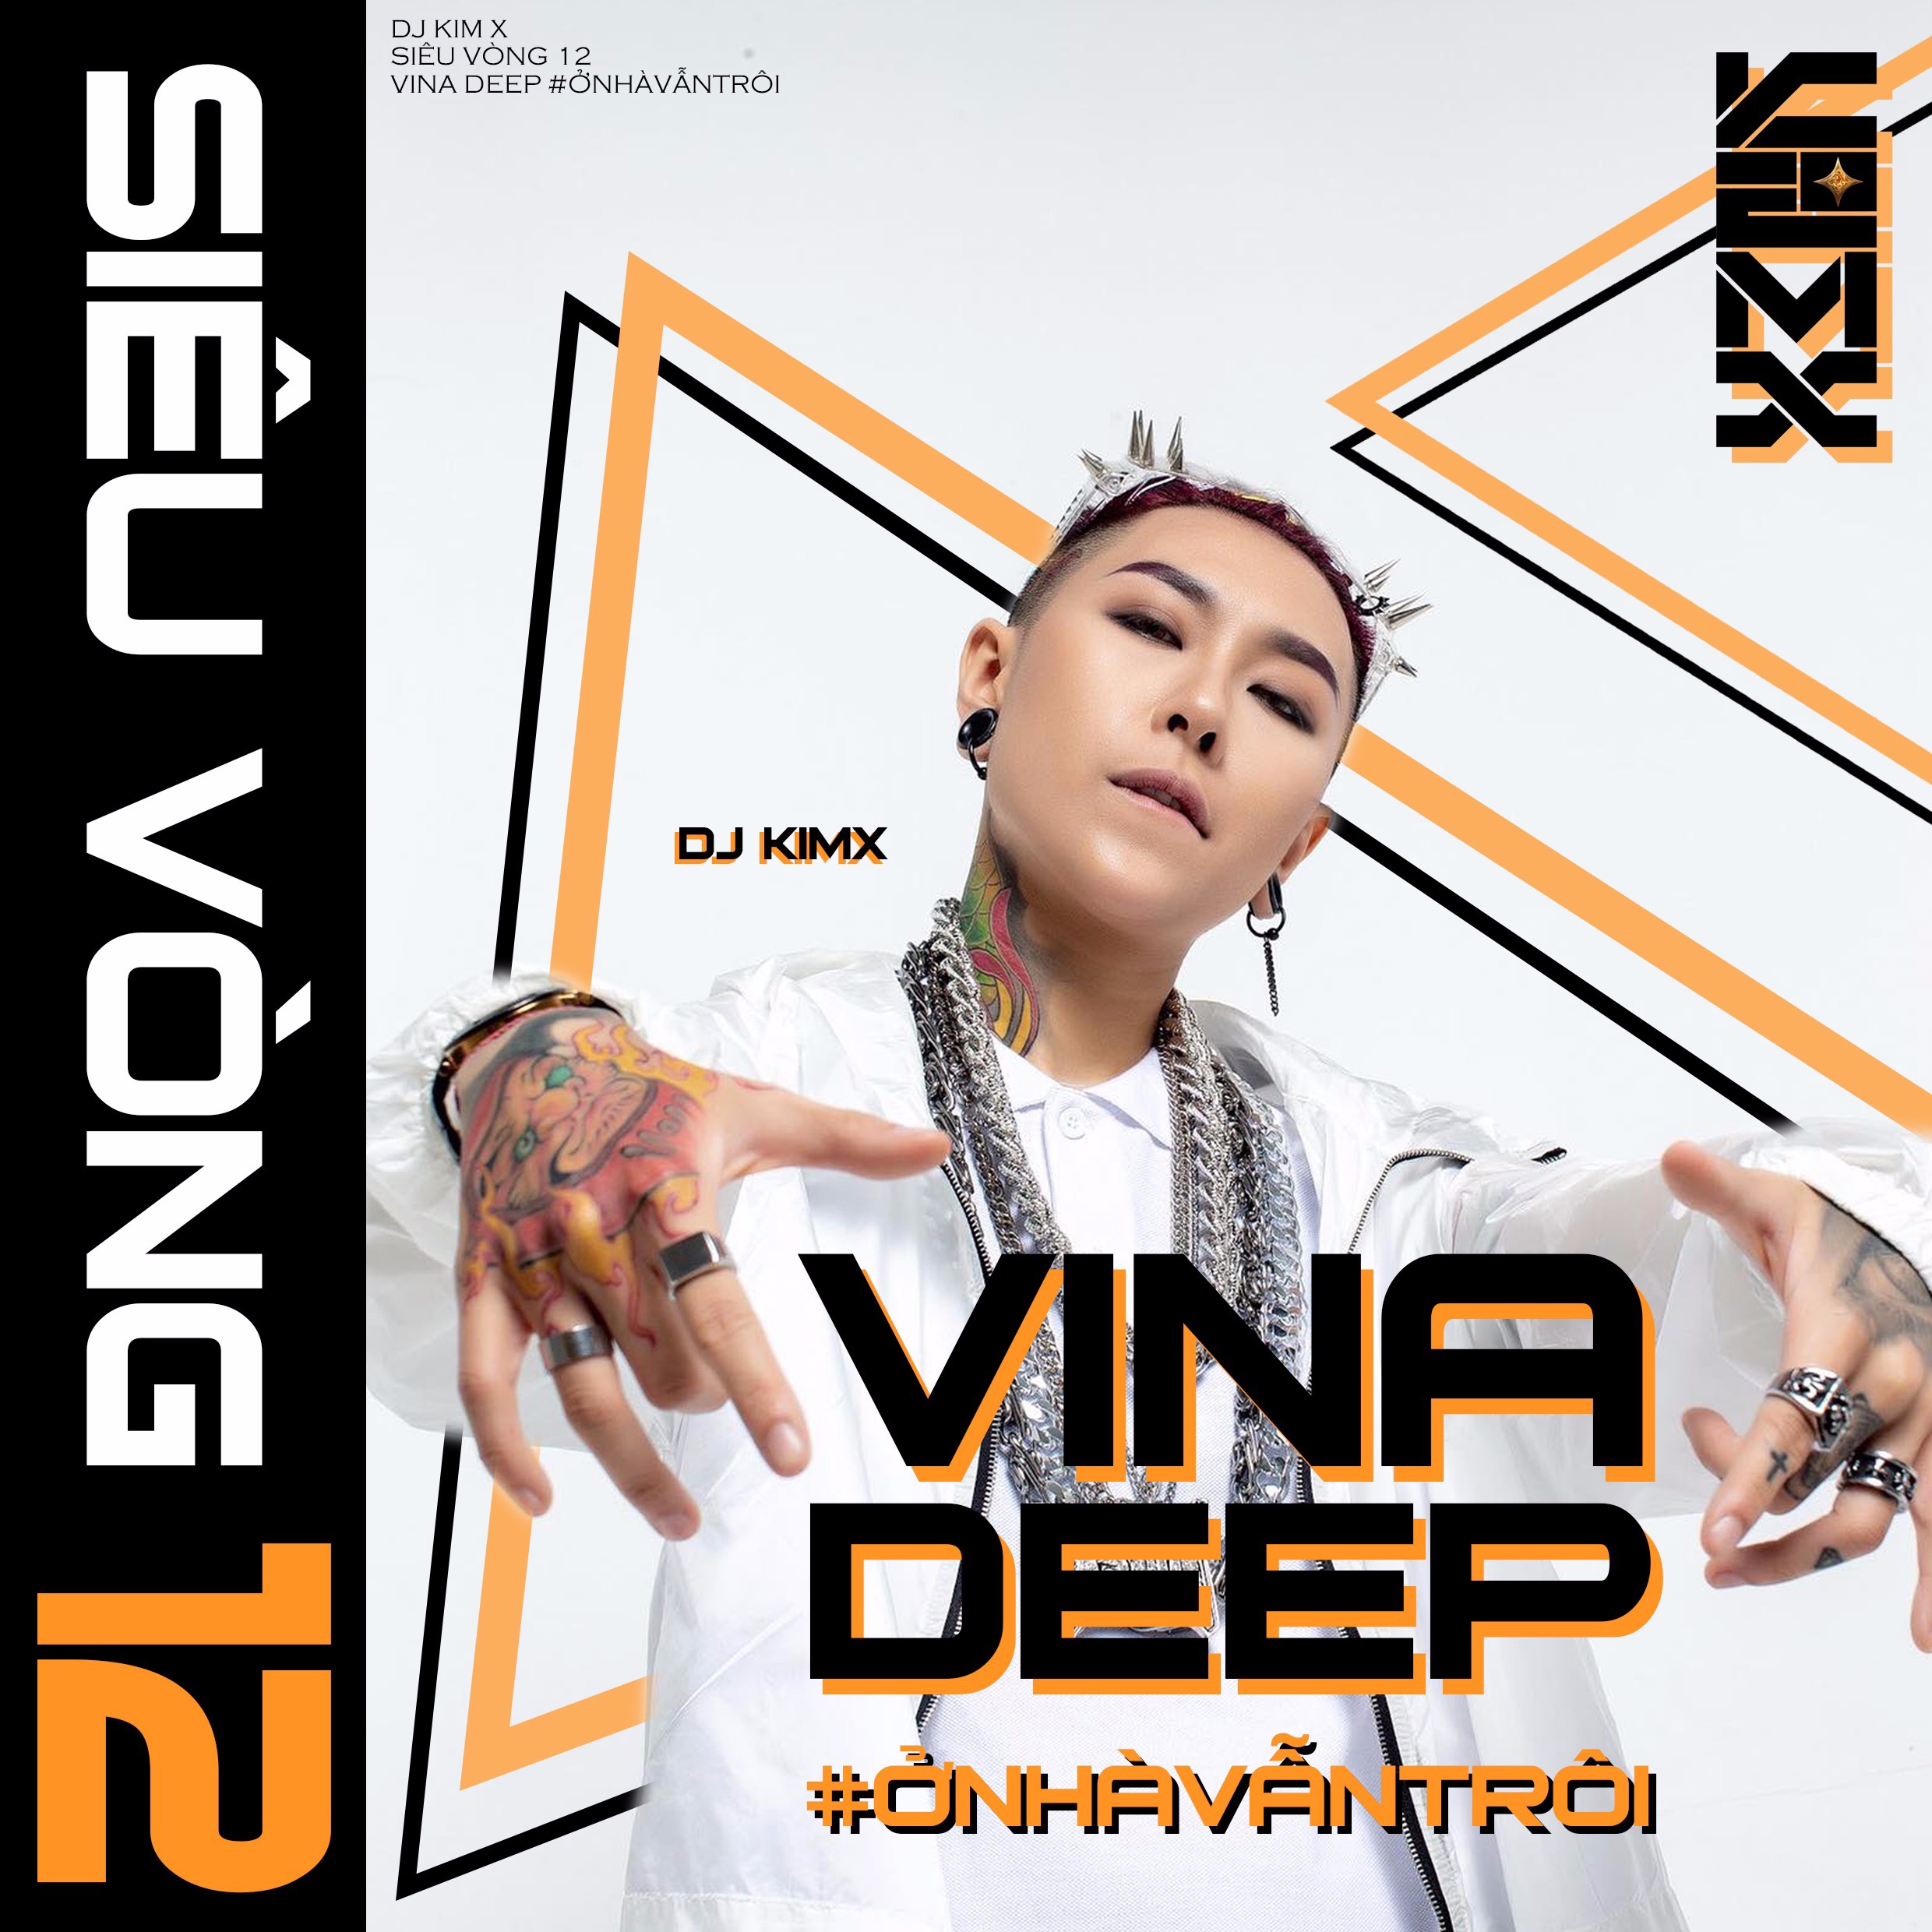 Κατεβάστε #ỞNHÀVẪNTRÔI --- DJ KIMX --- MIXSET KIMX SIÊU VÒNG 12 --- VINADEEP